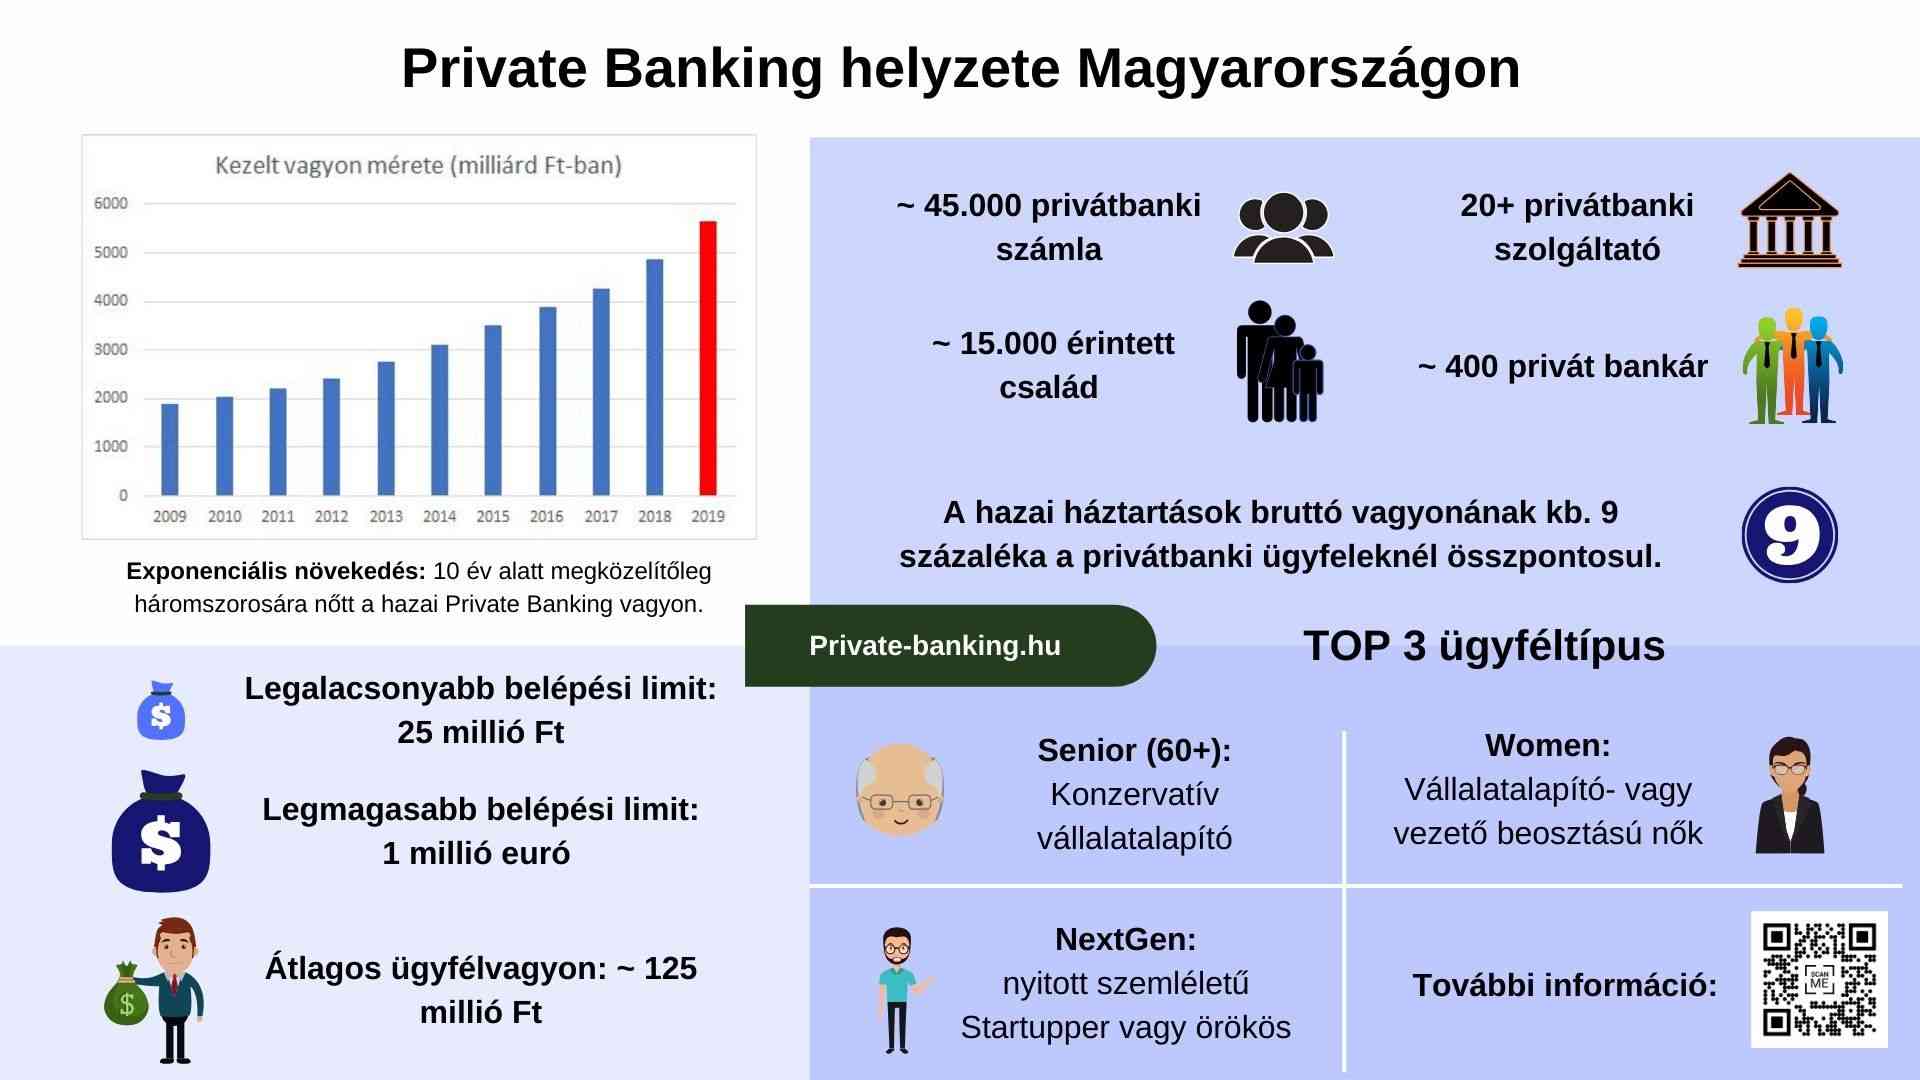 INFOGRAFIKA a hazai Private Banking helyzetéről